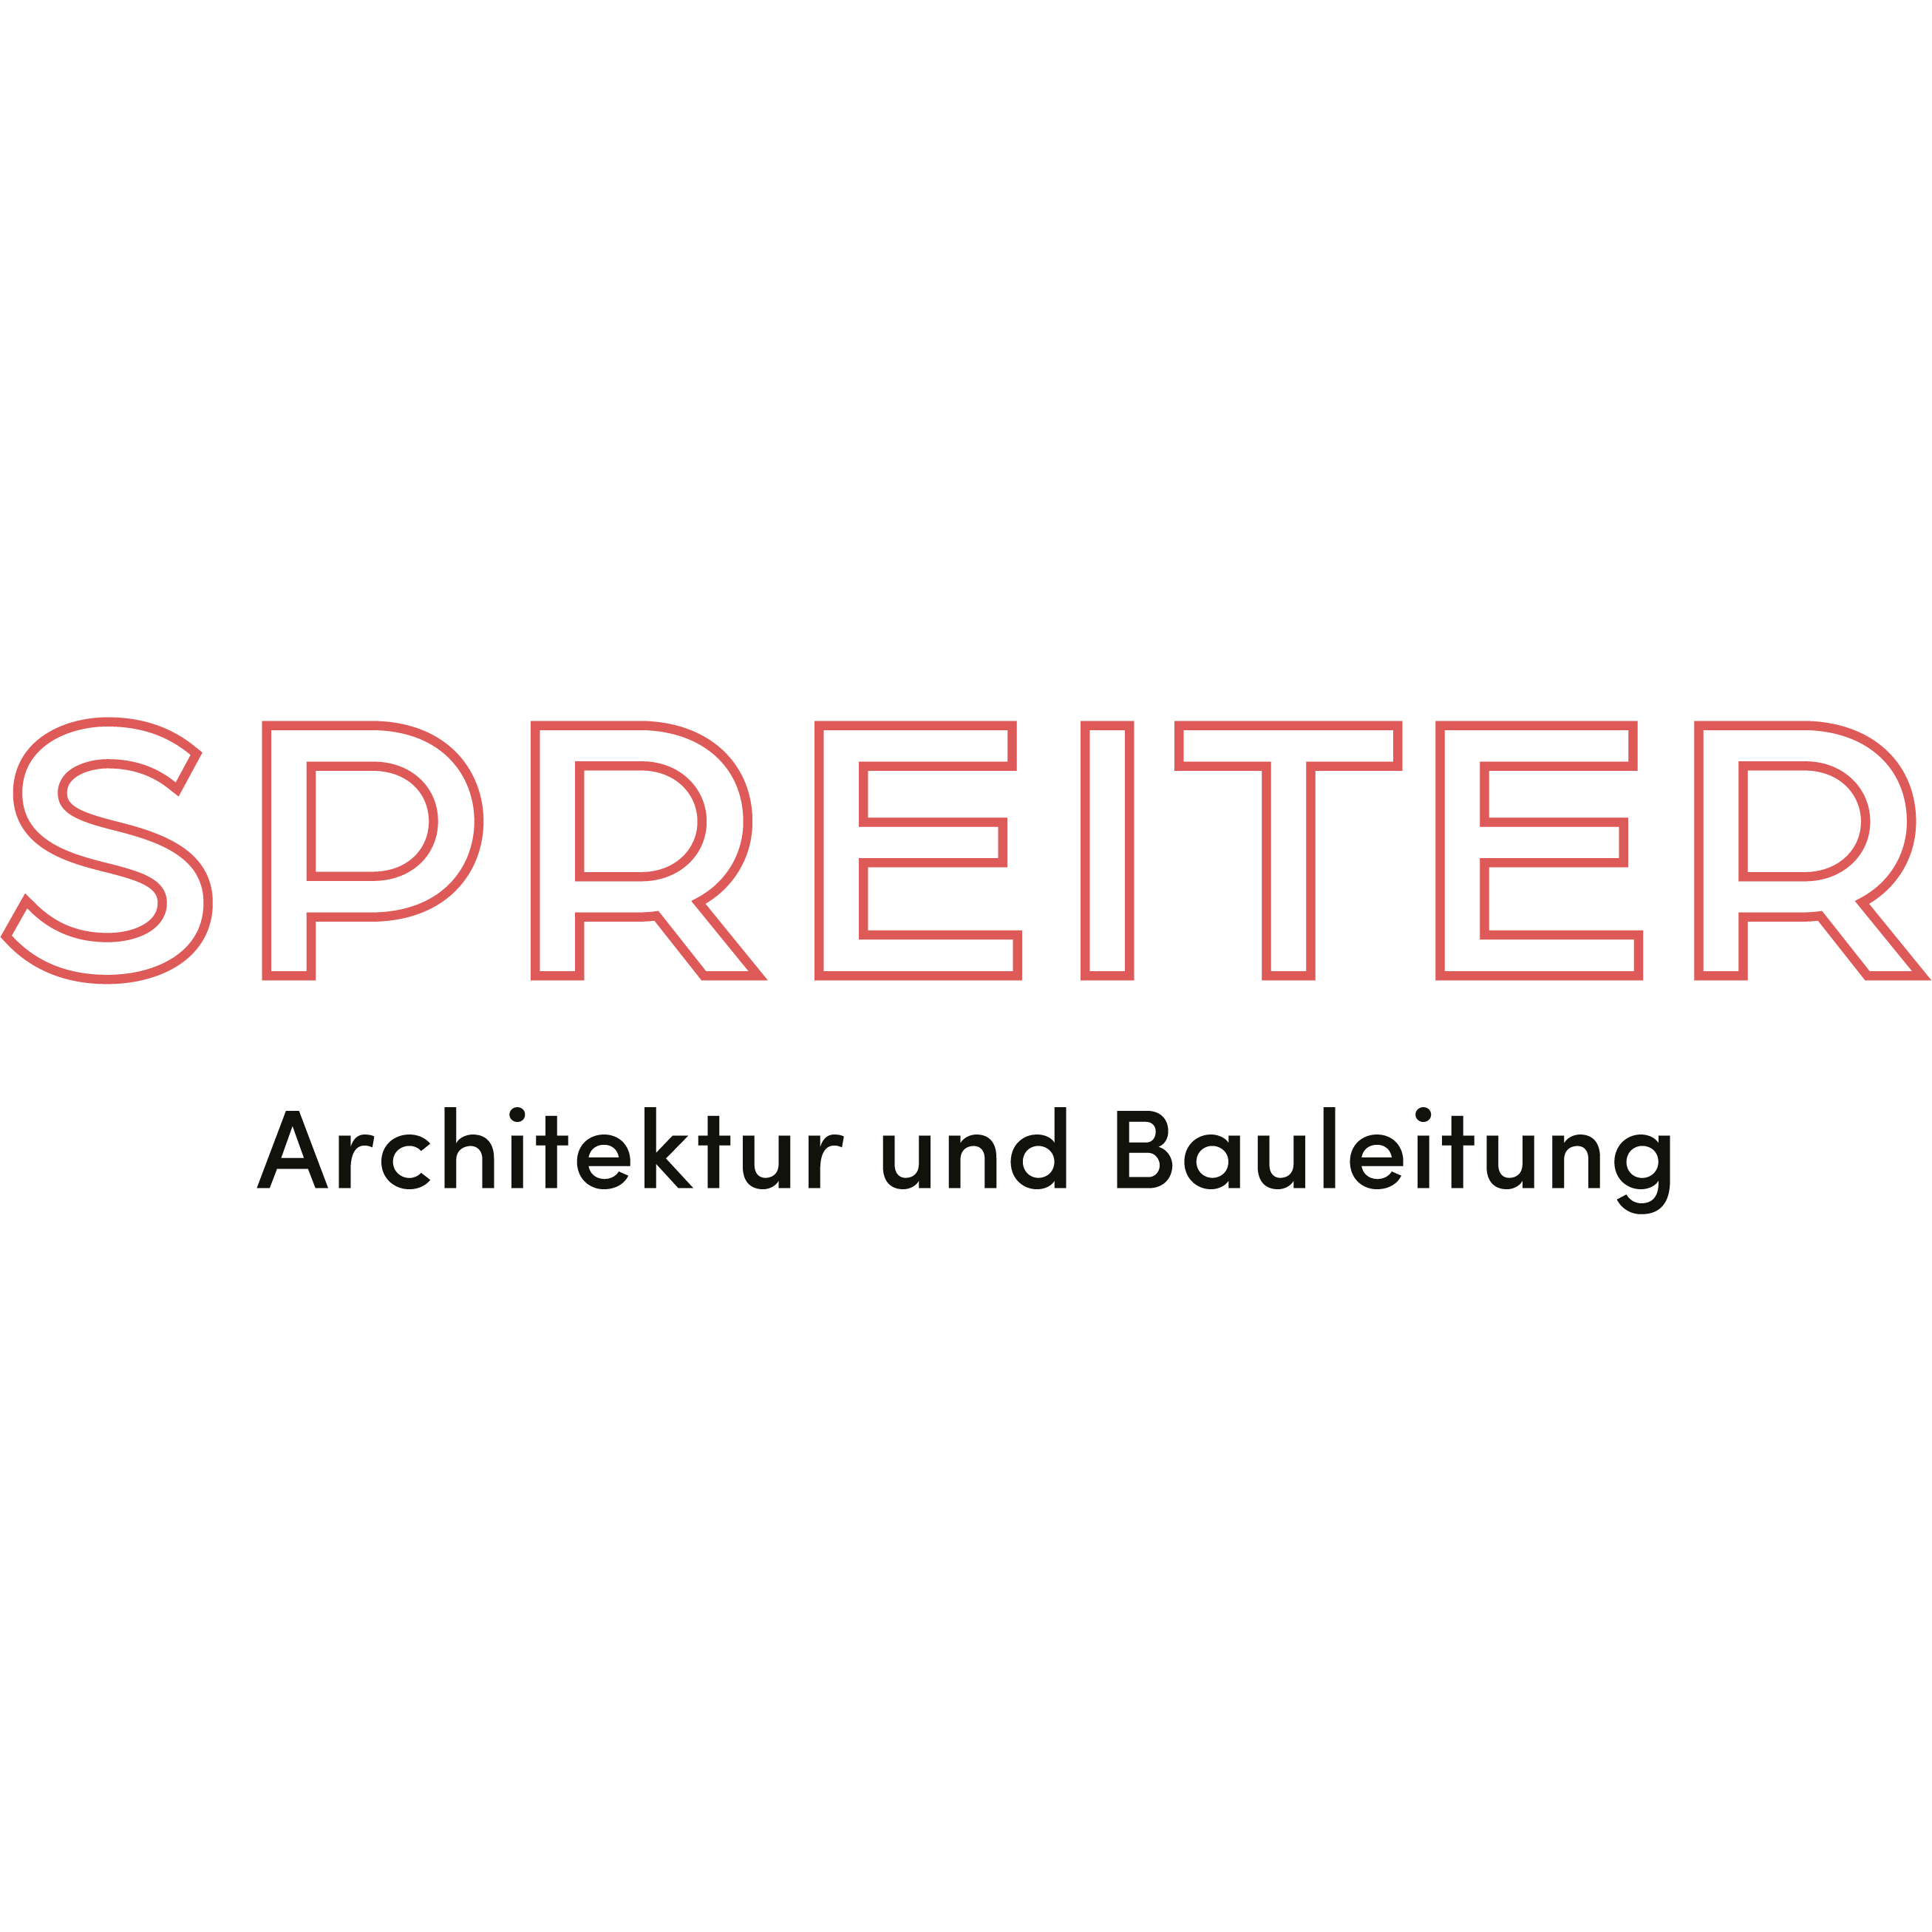 SPREITER Architektur und Bauleitung Logo